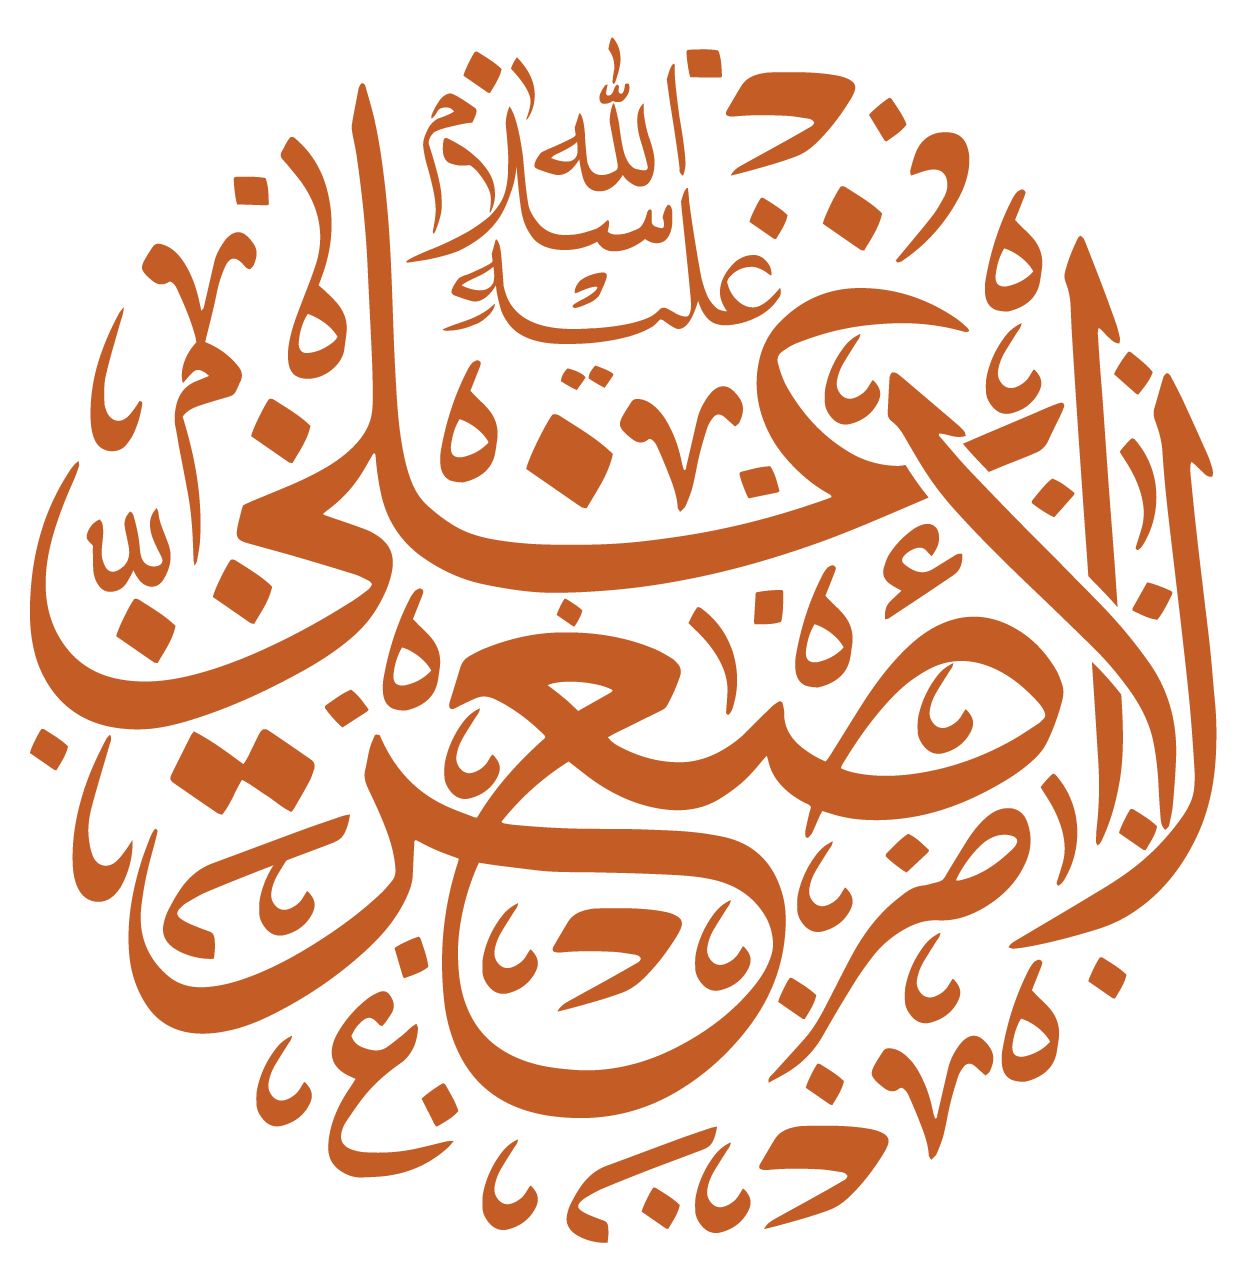 مخطوطة علي الأصغر كلك مولد عبد الله الرضيع عليه السلام، مفرغة بصيغة png